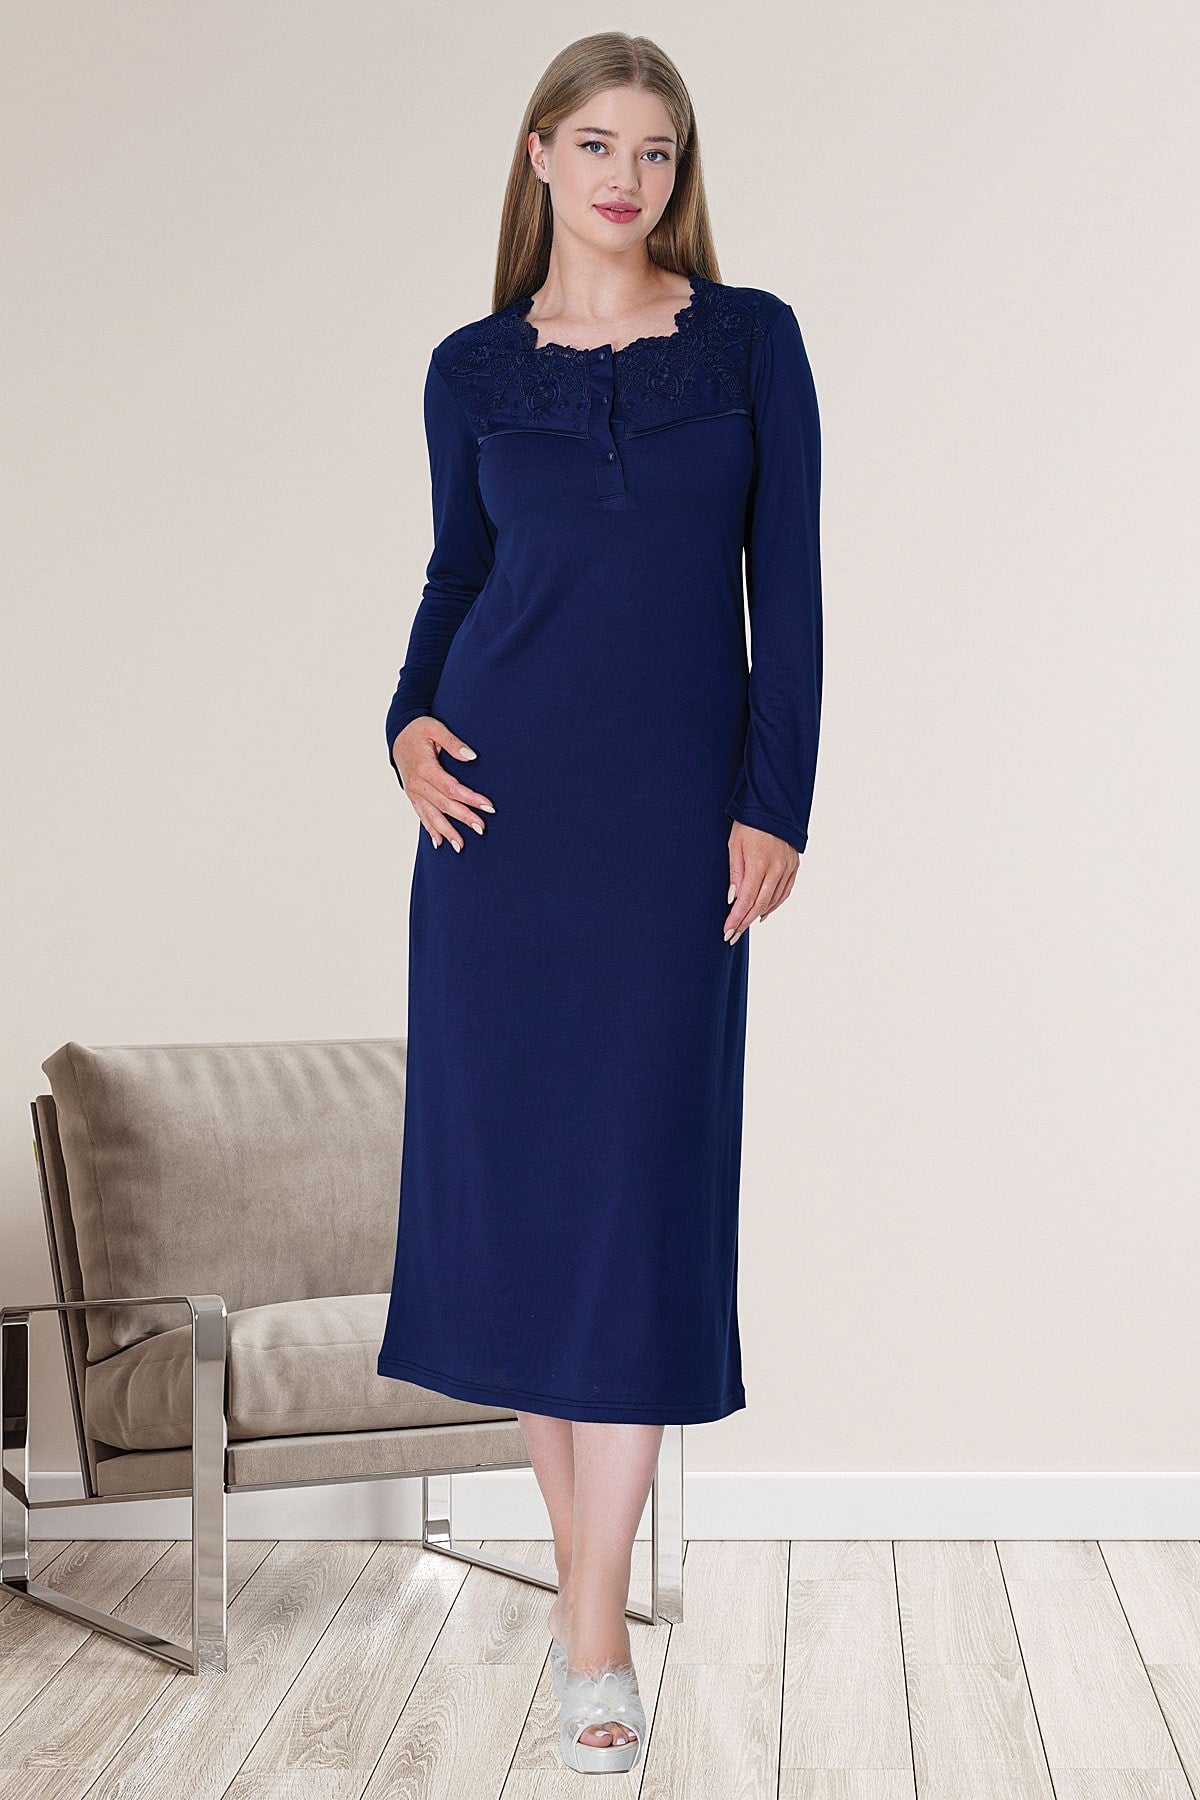 Shopymommy 5724 Velvet Lace 4 Pieces Maternity & Nursing Set Navy Blue